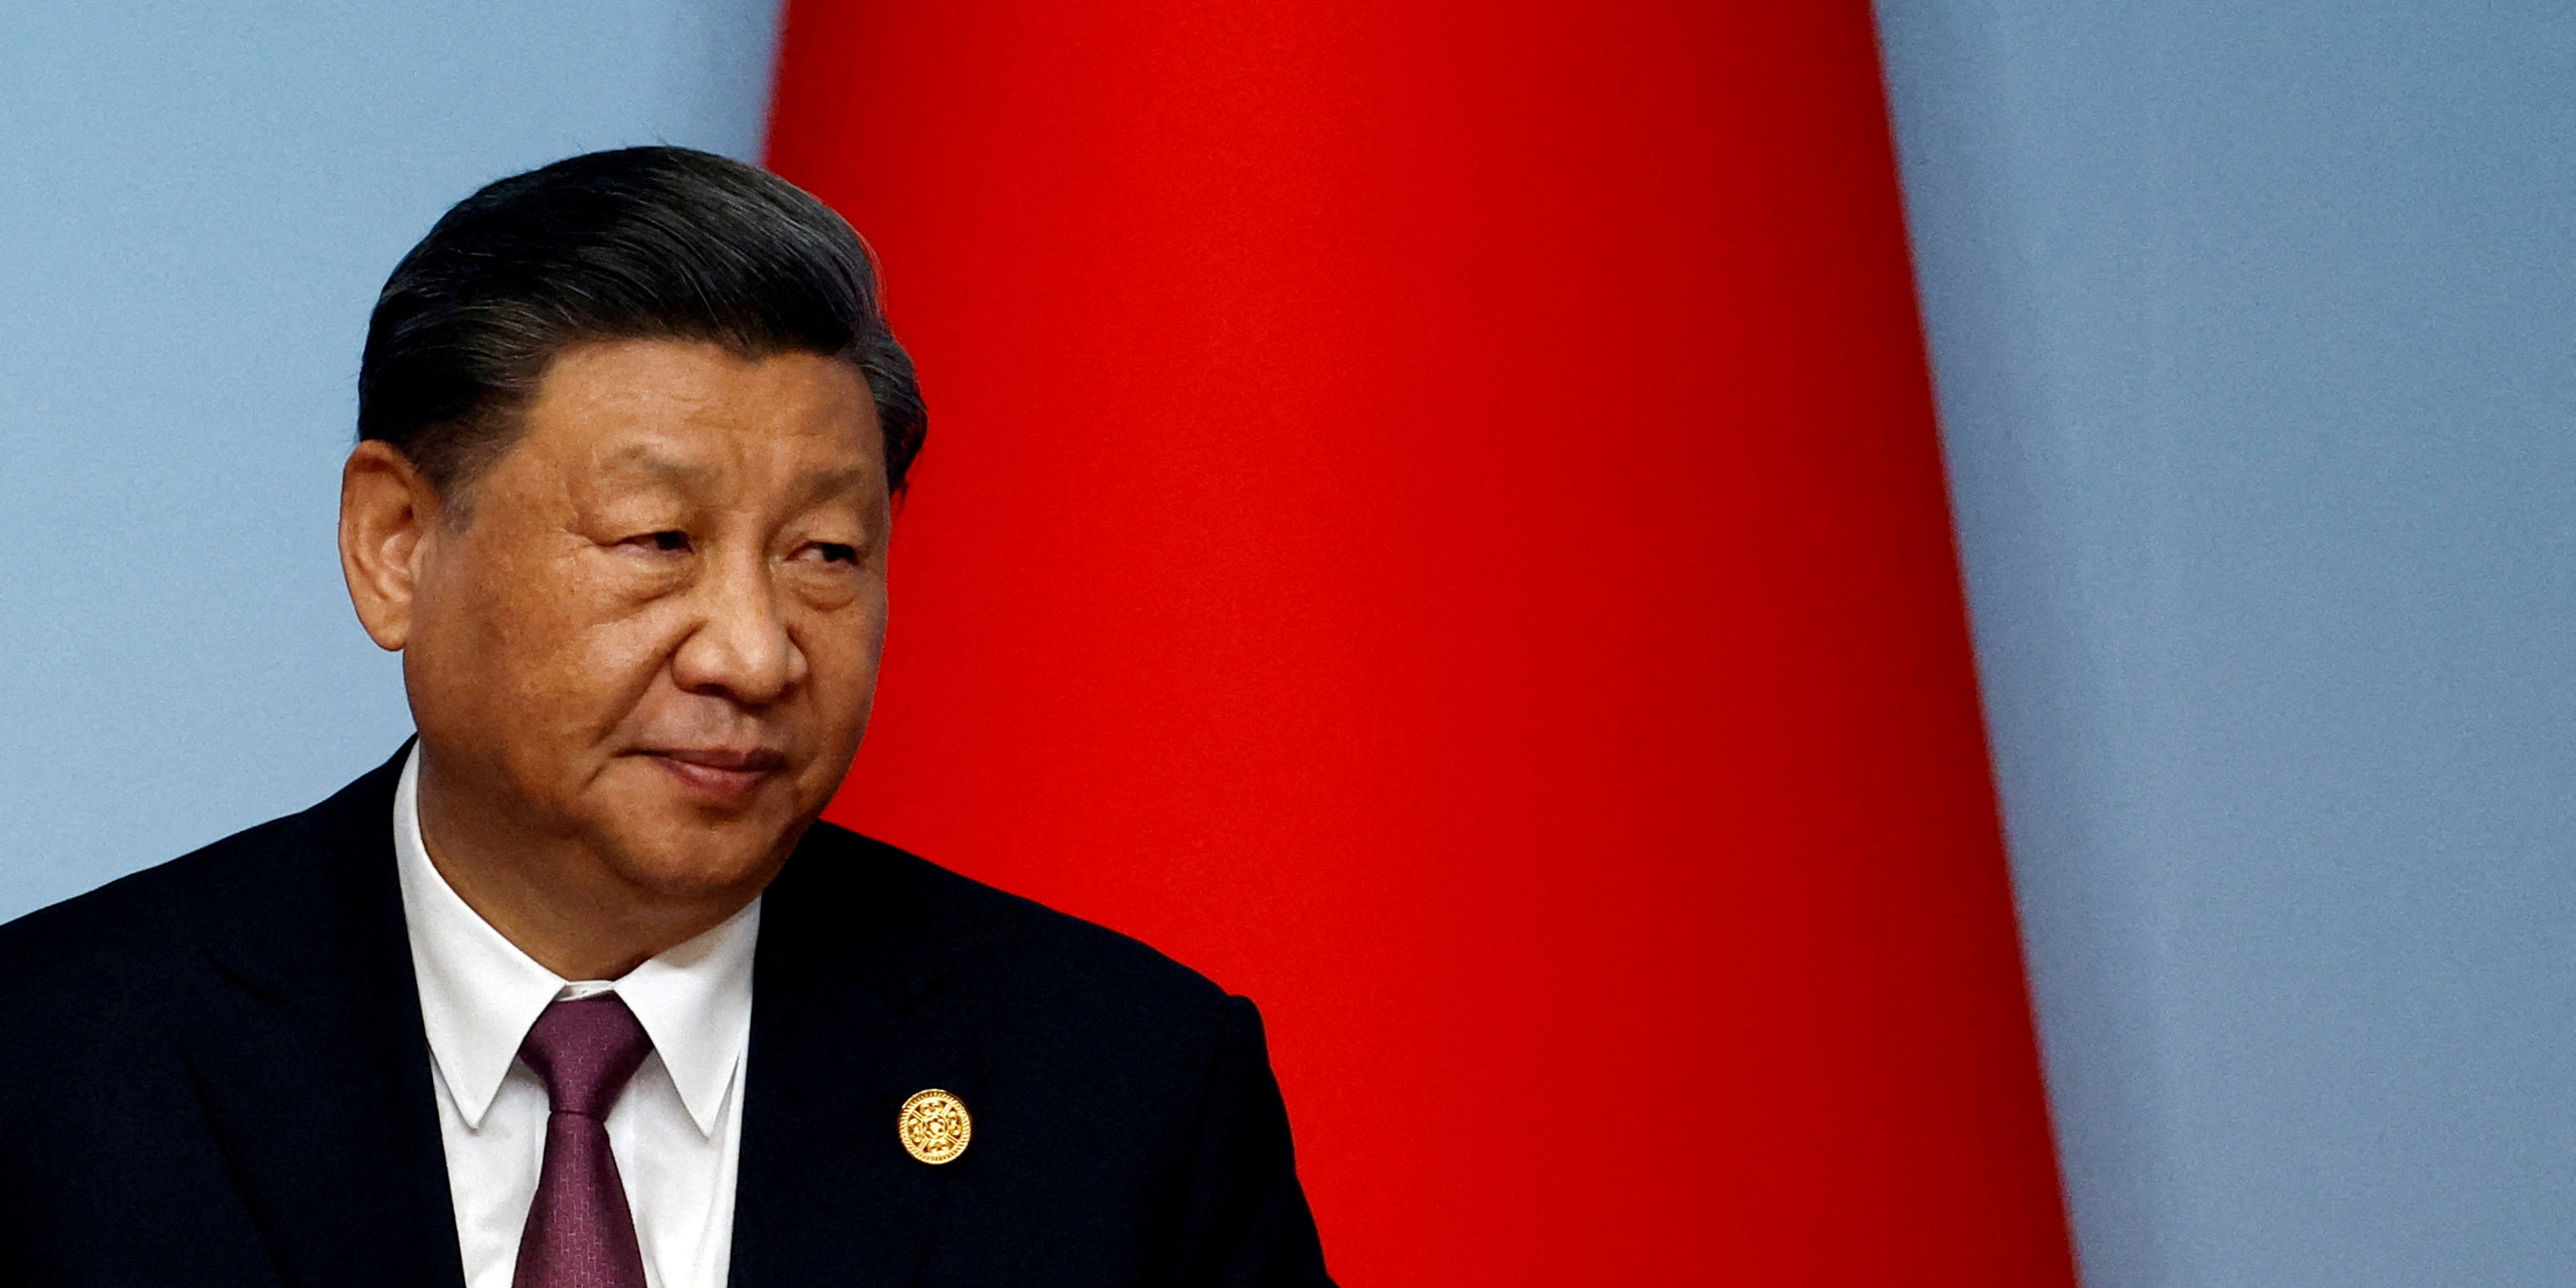 La Chine renforce encore ses liens avec le Venezuela en lui accordant son plus haut statut diplomatique